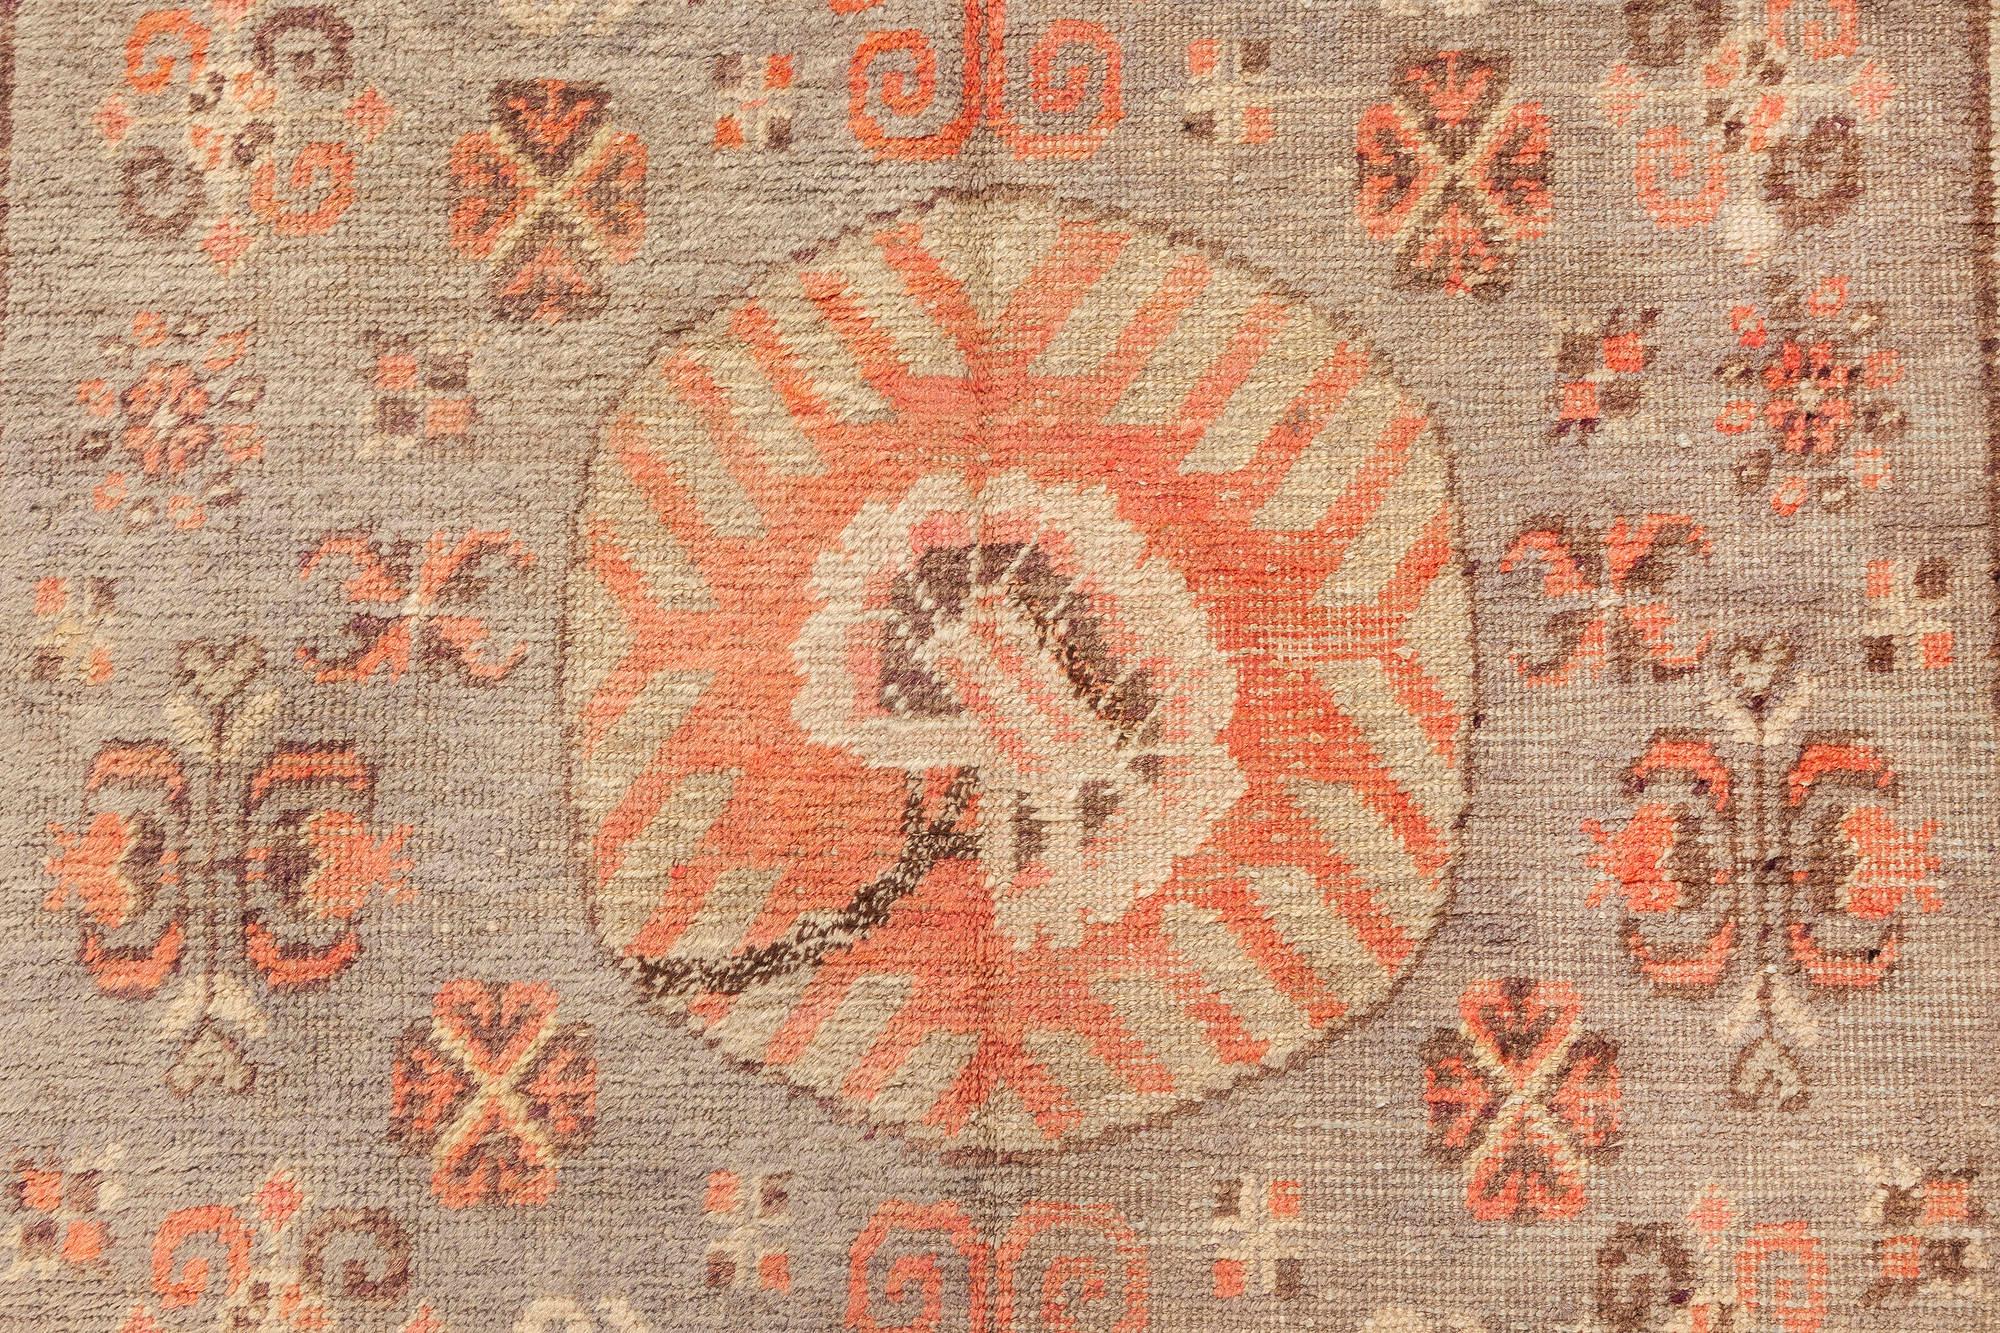 Samarkand-Teppich aus der Mitte des Jahrhunderts, handgefertigt aus Wolle in Braun, Grün und Rosa.
Größe: 4'3